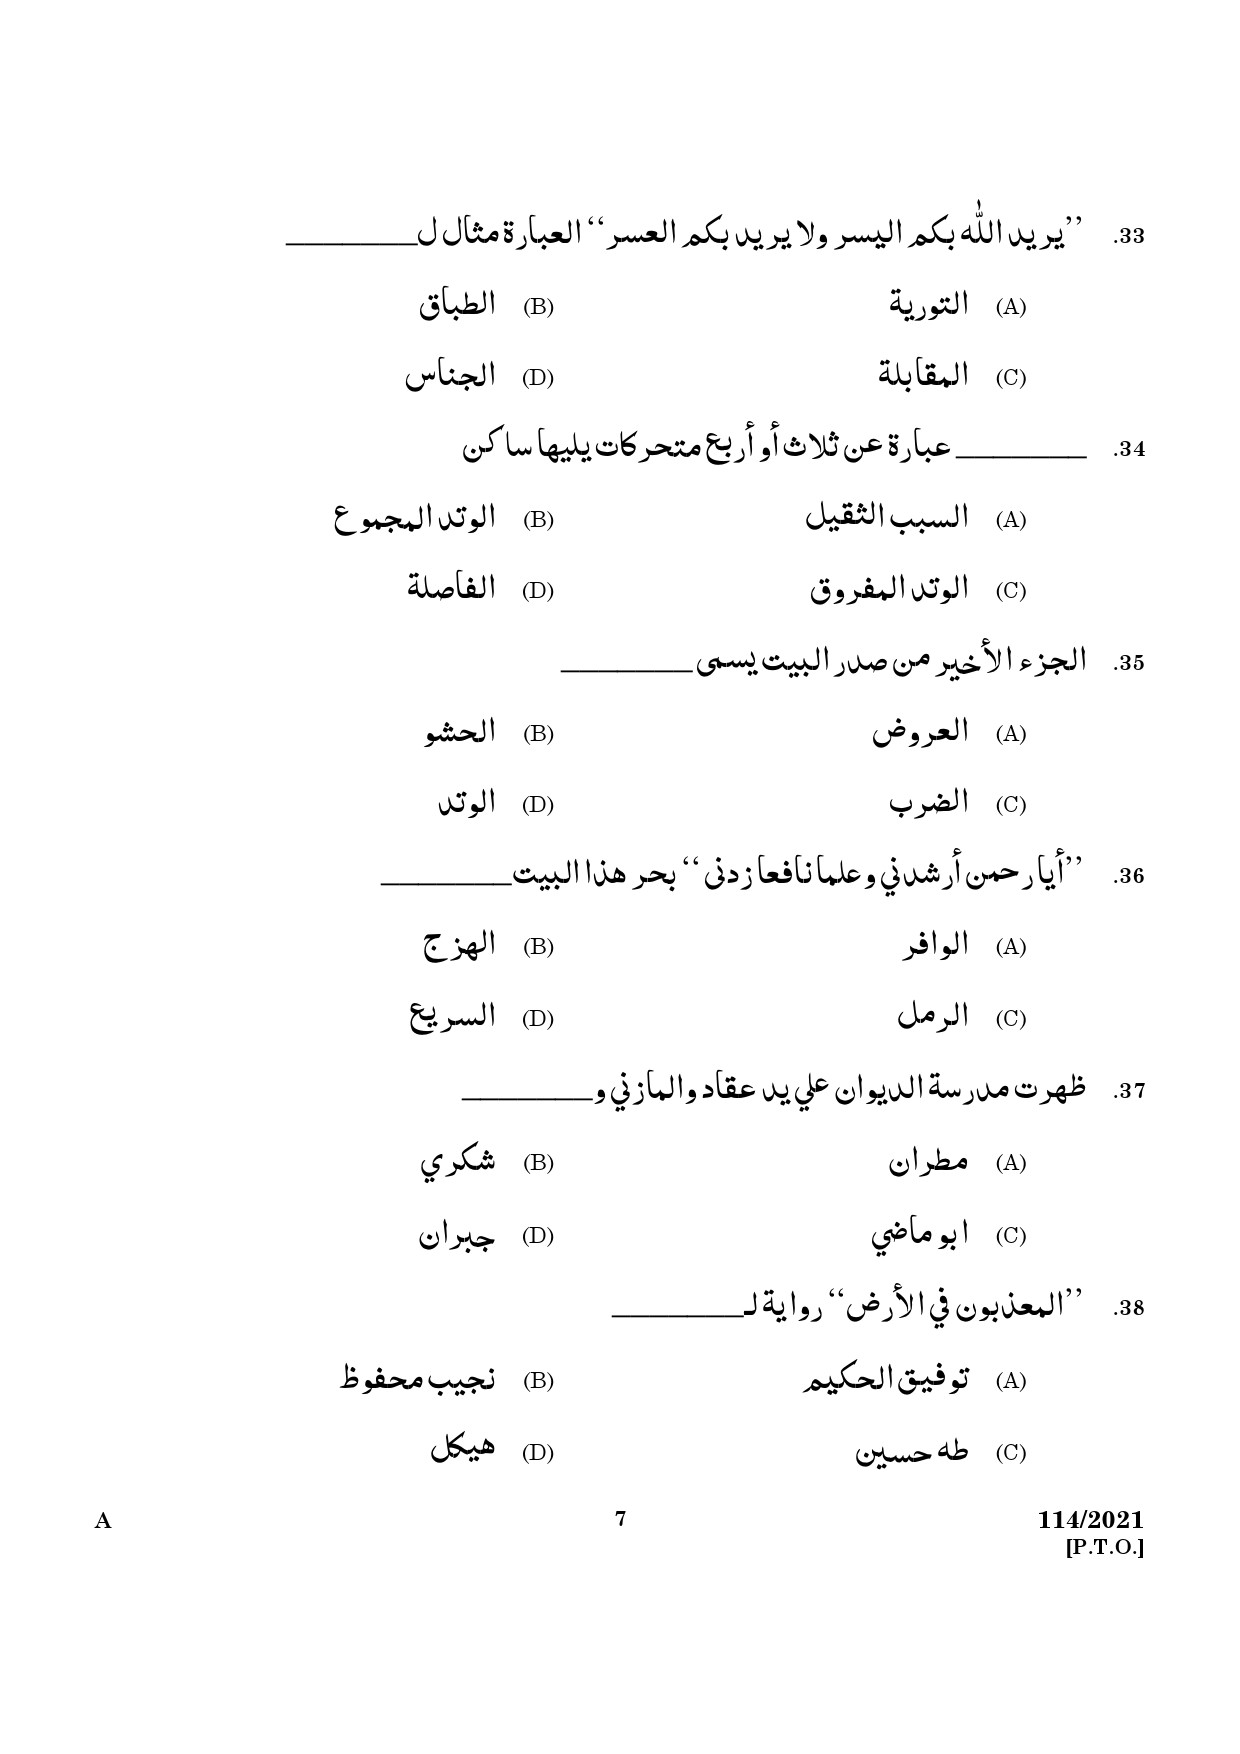 KPSC Full Time Junior Language Teacher Arabic Exam 2021 Code 1142021 5